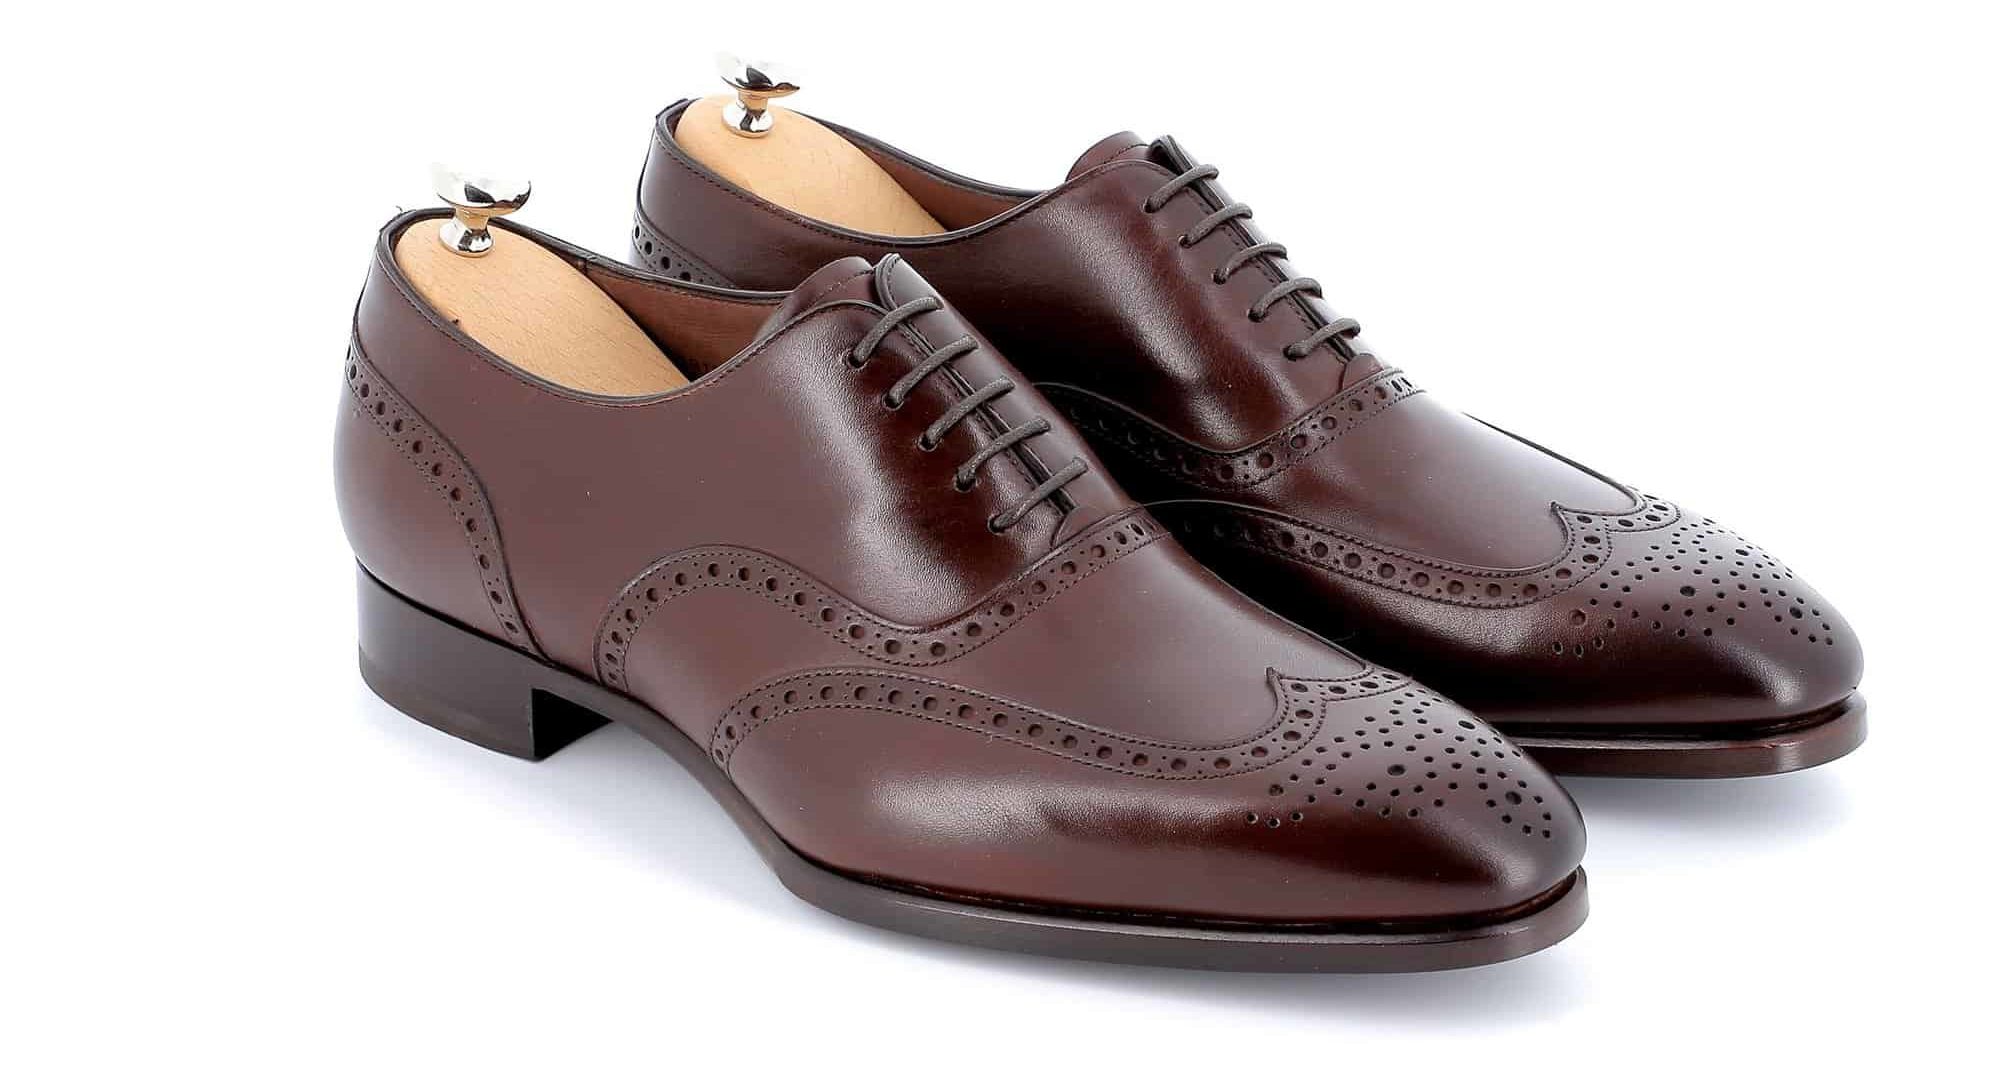 Chaussures Richelieu Charles cuir marron semelles cuir